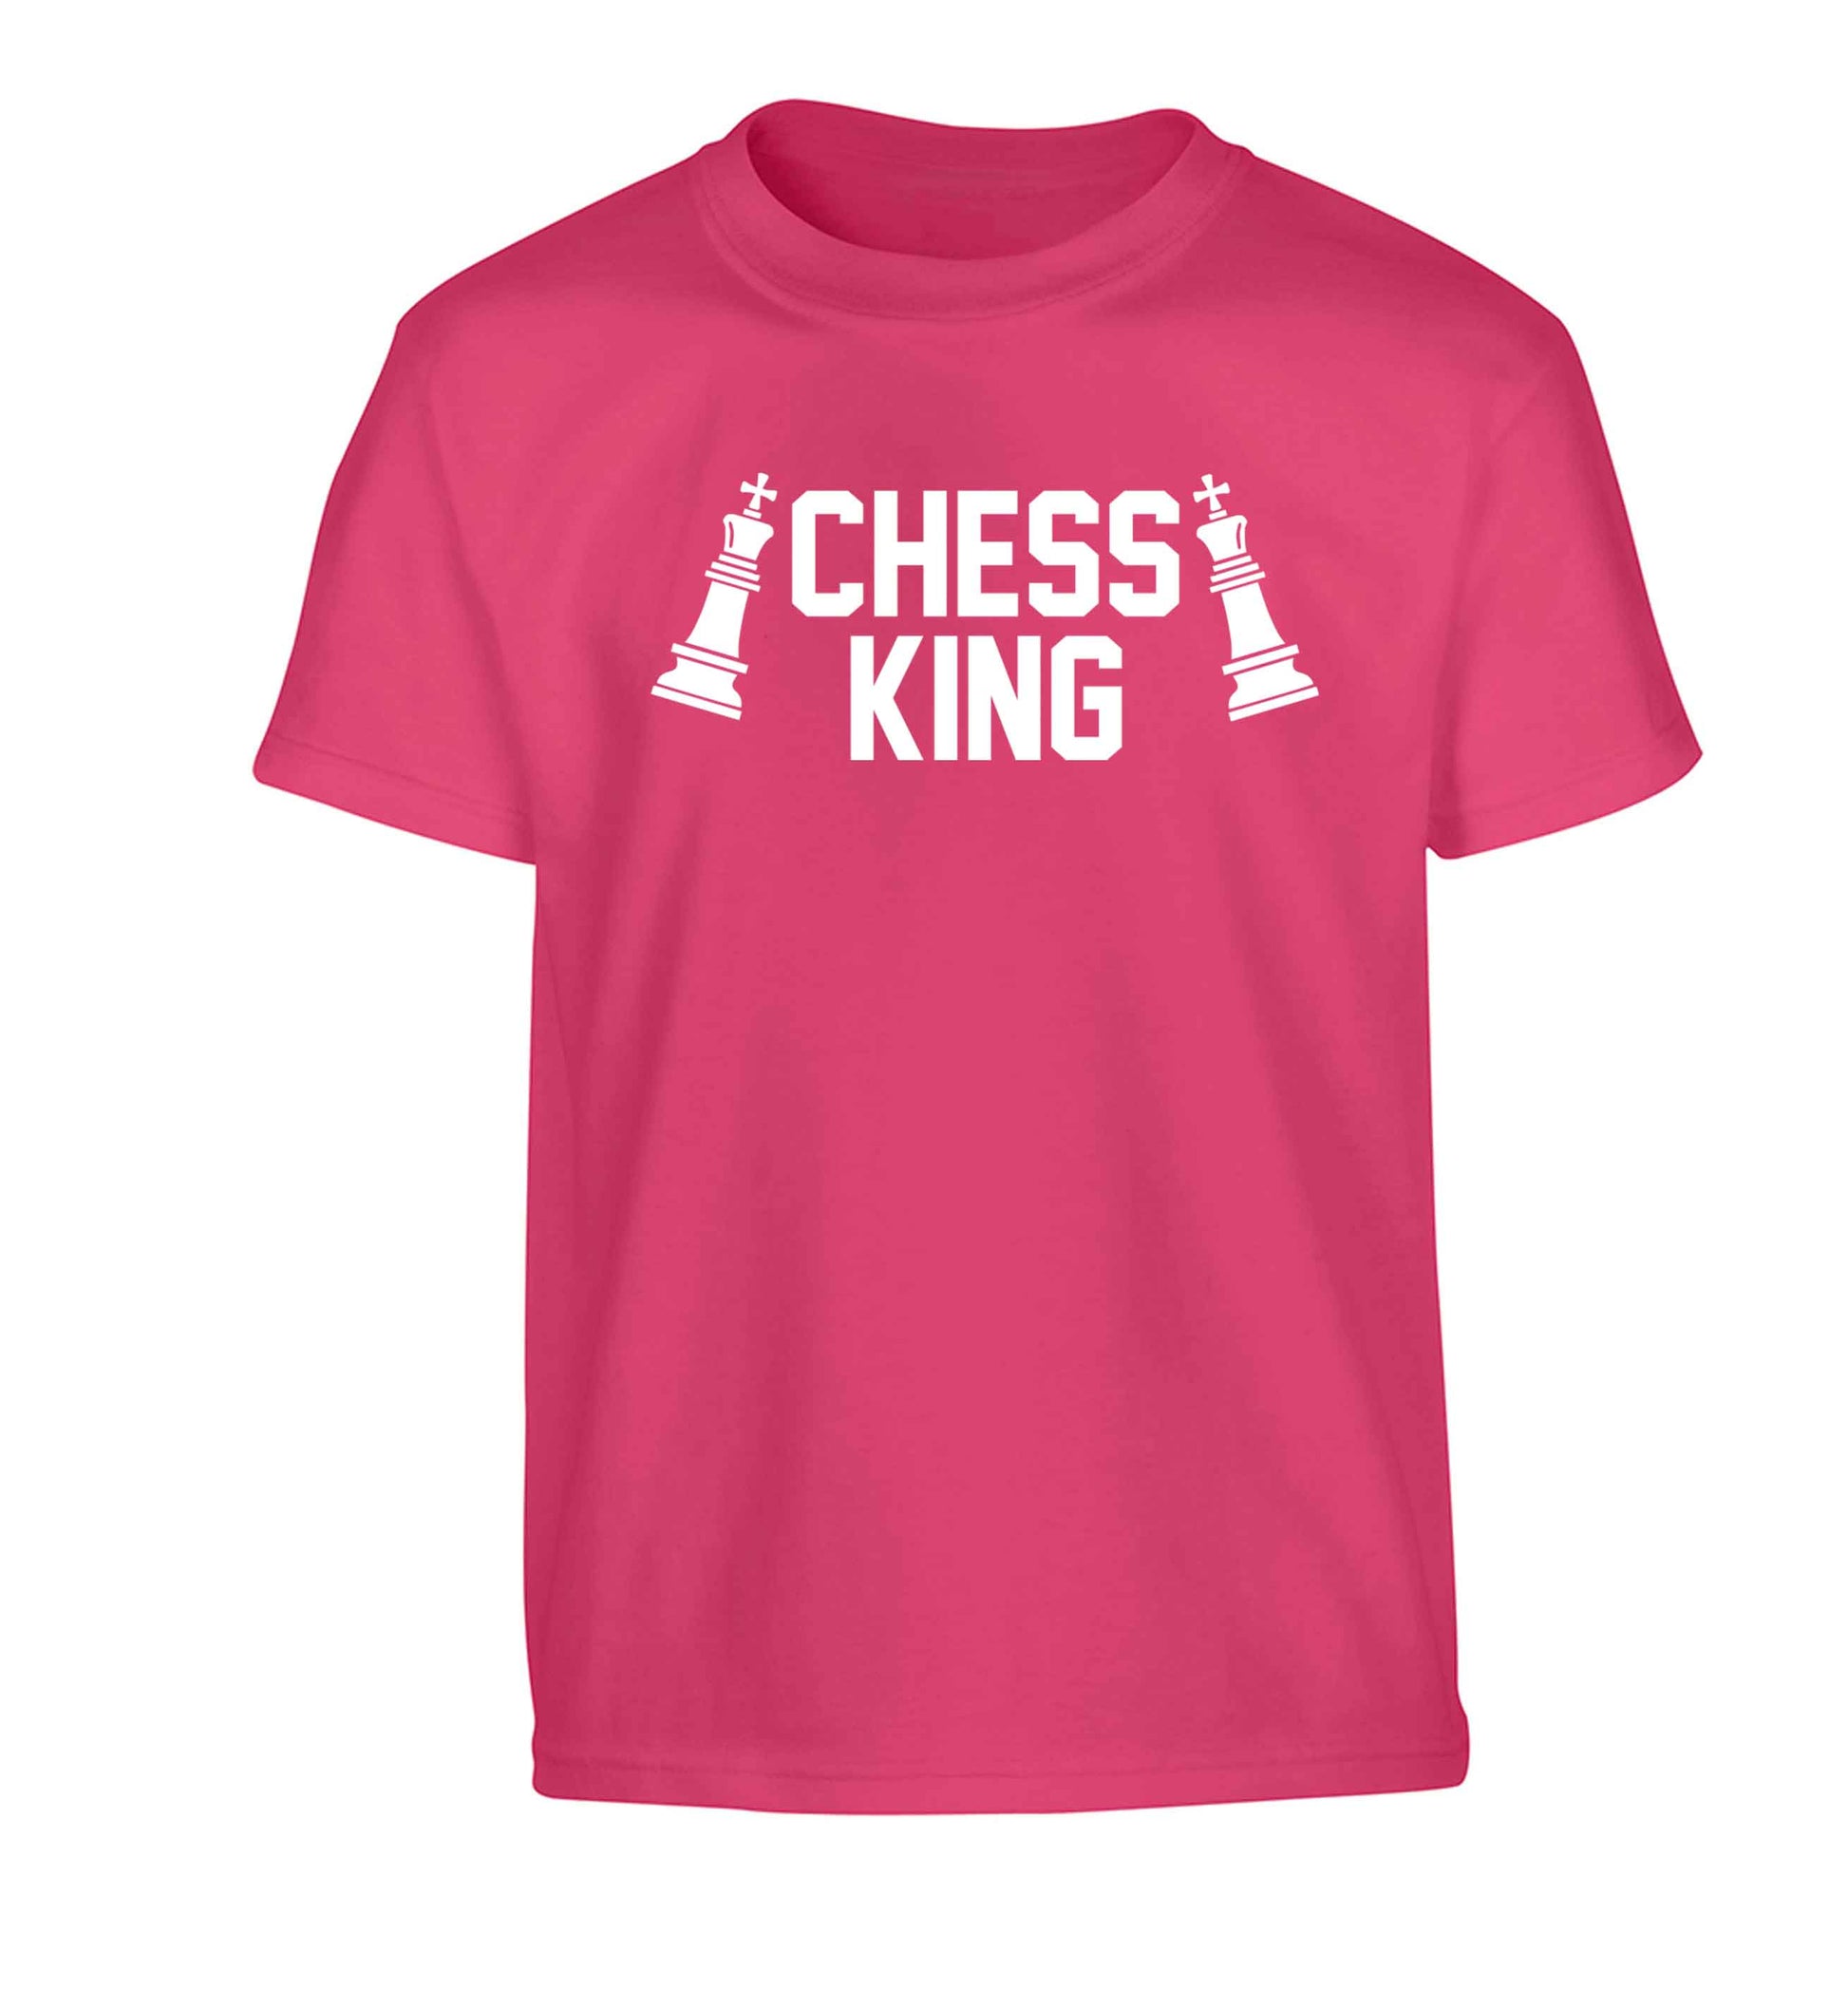 Chess king Children's pink Tshirt 12-13 Years